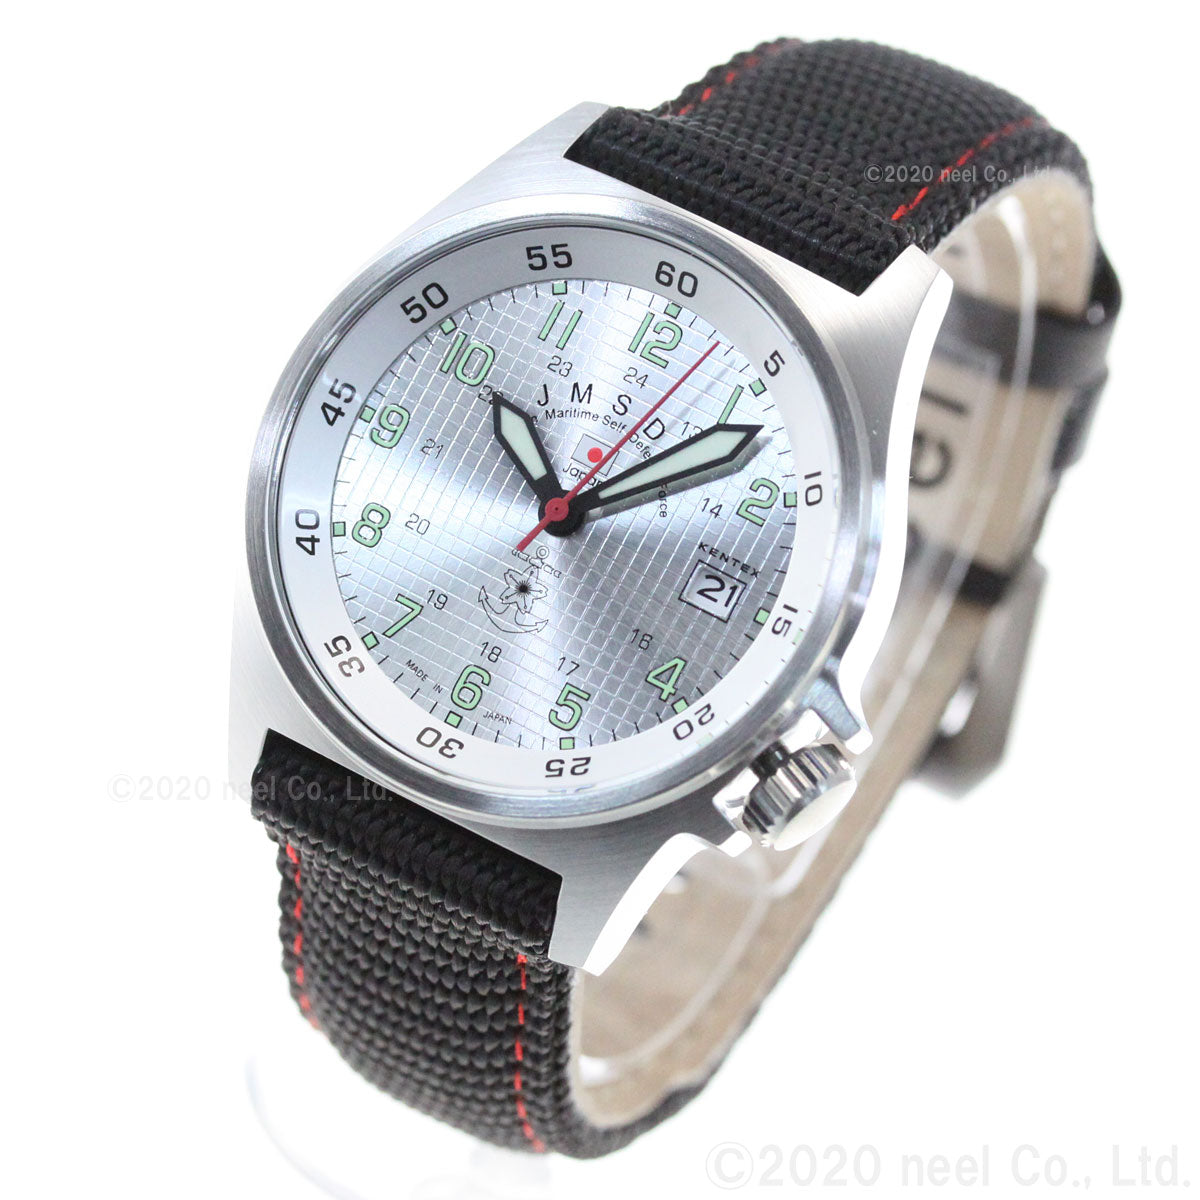 KENTEX ケンテックス 腕時計 メンズ JSDF スタンダード 自衛隊モデル 海上自衛隊 ナイロンバンド S455M-03【正規品】